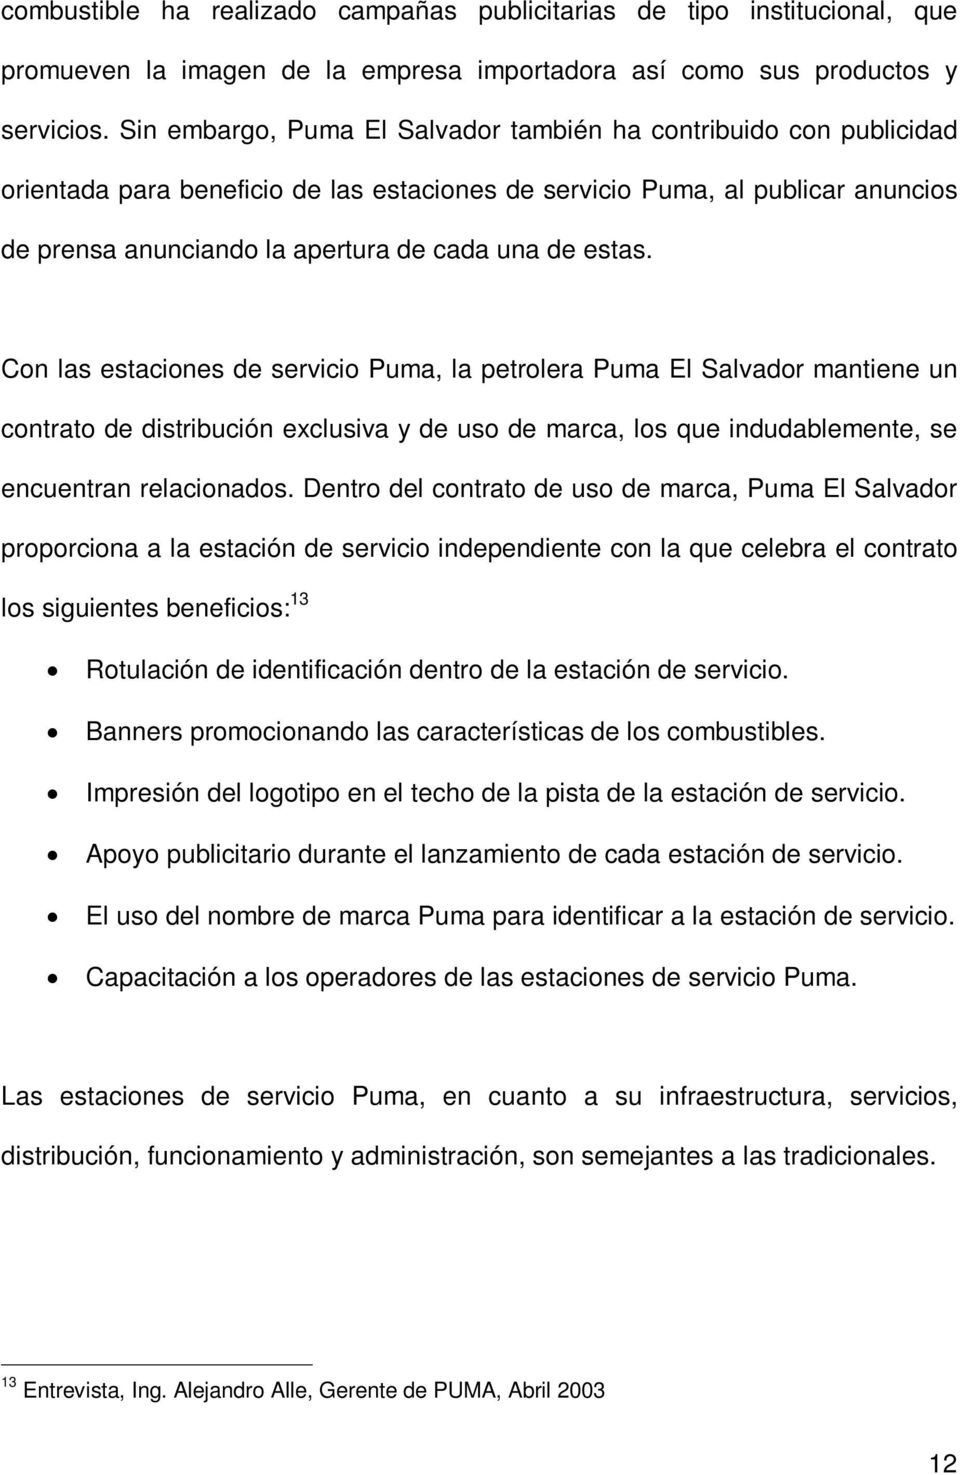 estas. Con las estaciones de servicio Puma, la petrolera Puma El Salvador mantiene un contrato de distribución exclusiva y de uso de marca, los que indudablemente, se encuentran relacionados.